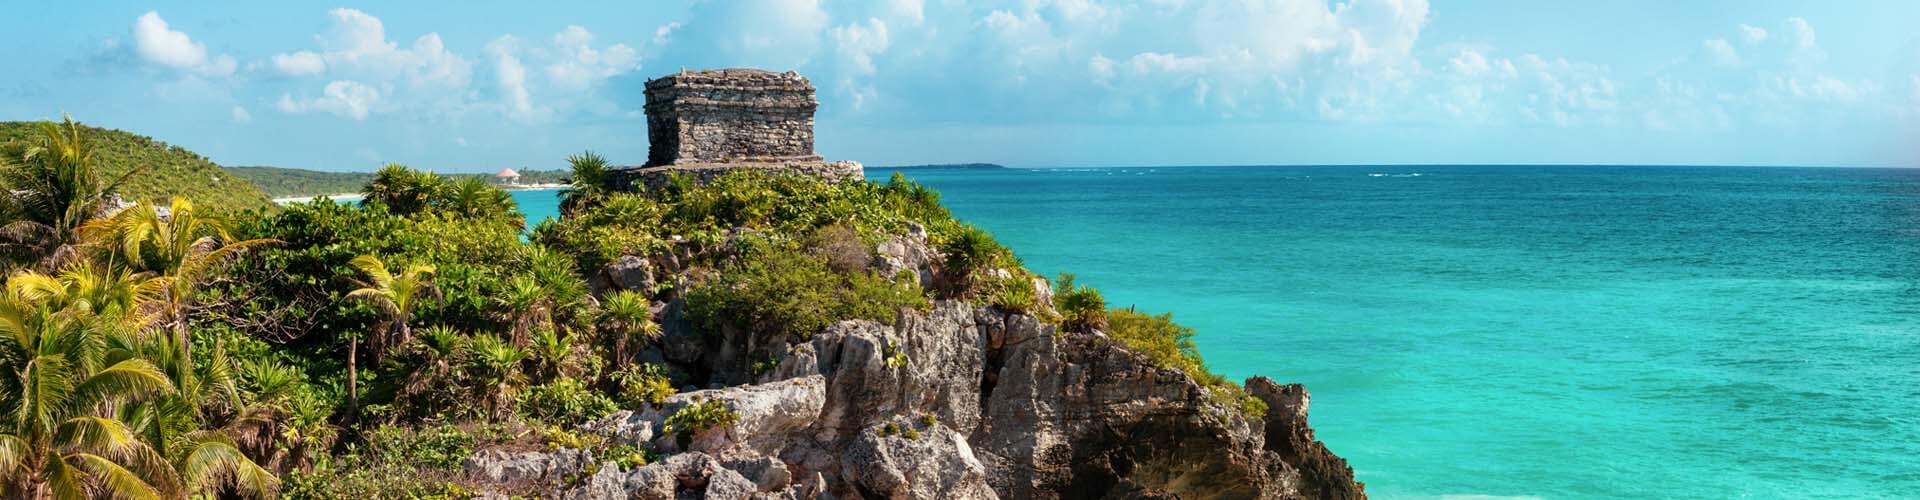 Mexico, Yucatan view in Tullum